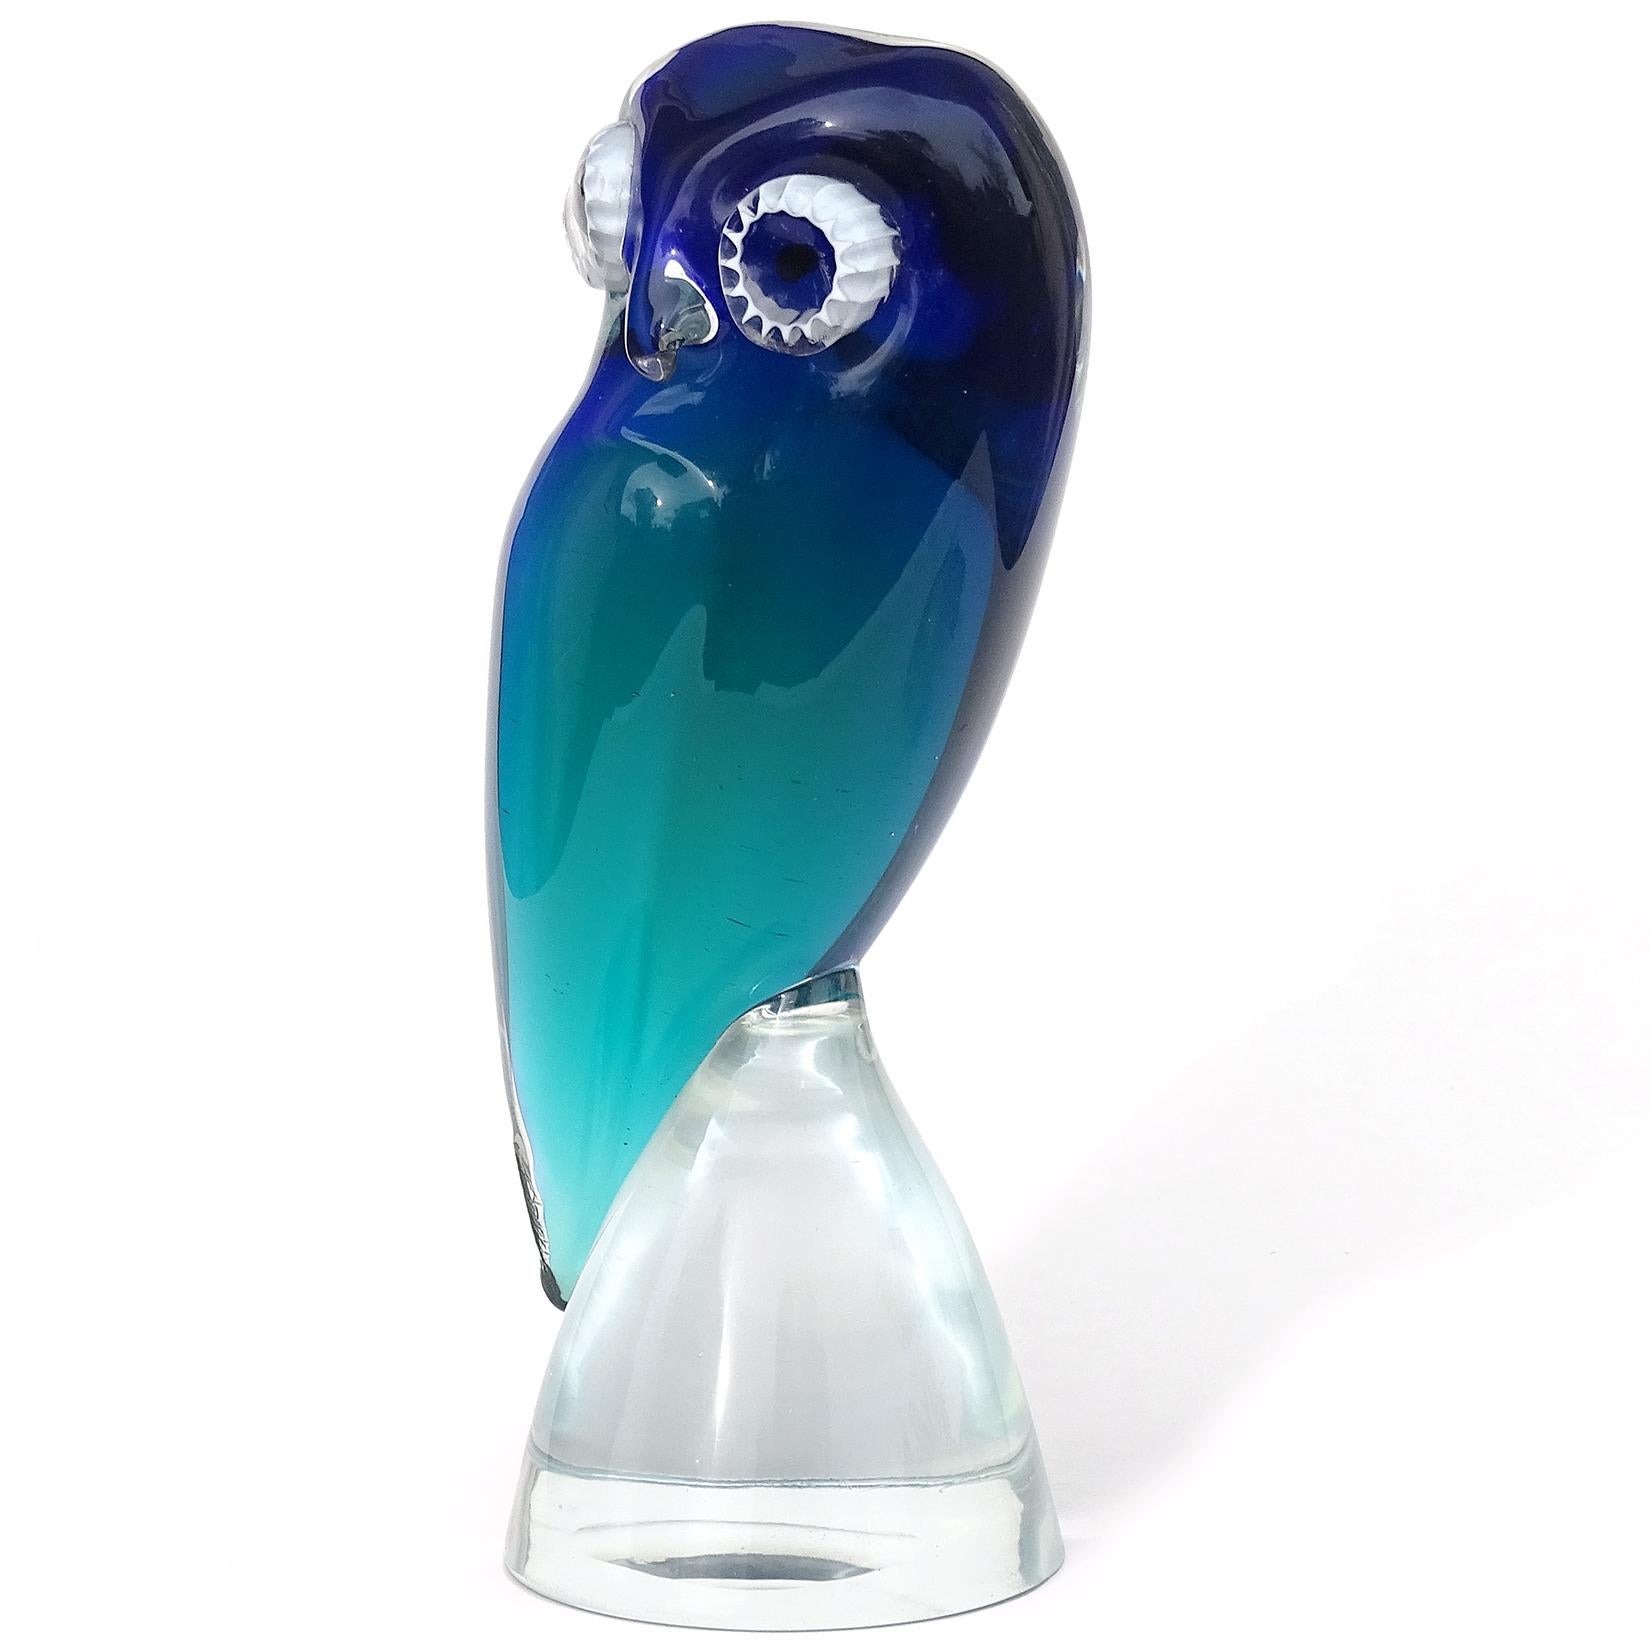 Mid-Century Modern Salviati Murano Sommerso Cobalt Blue Teal Italian Art Glass Owl Bird Sculpture